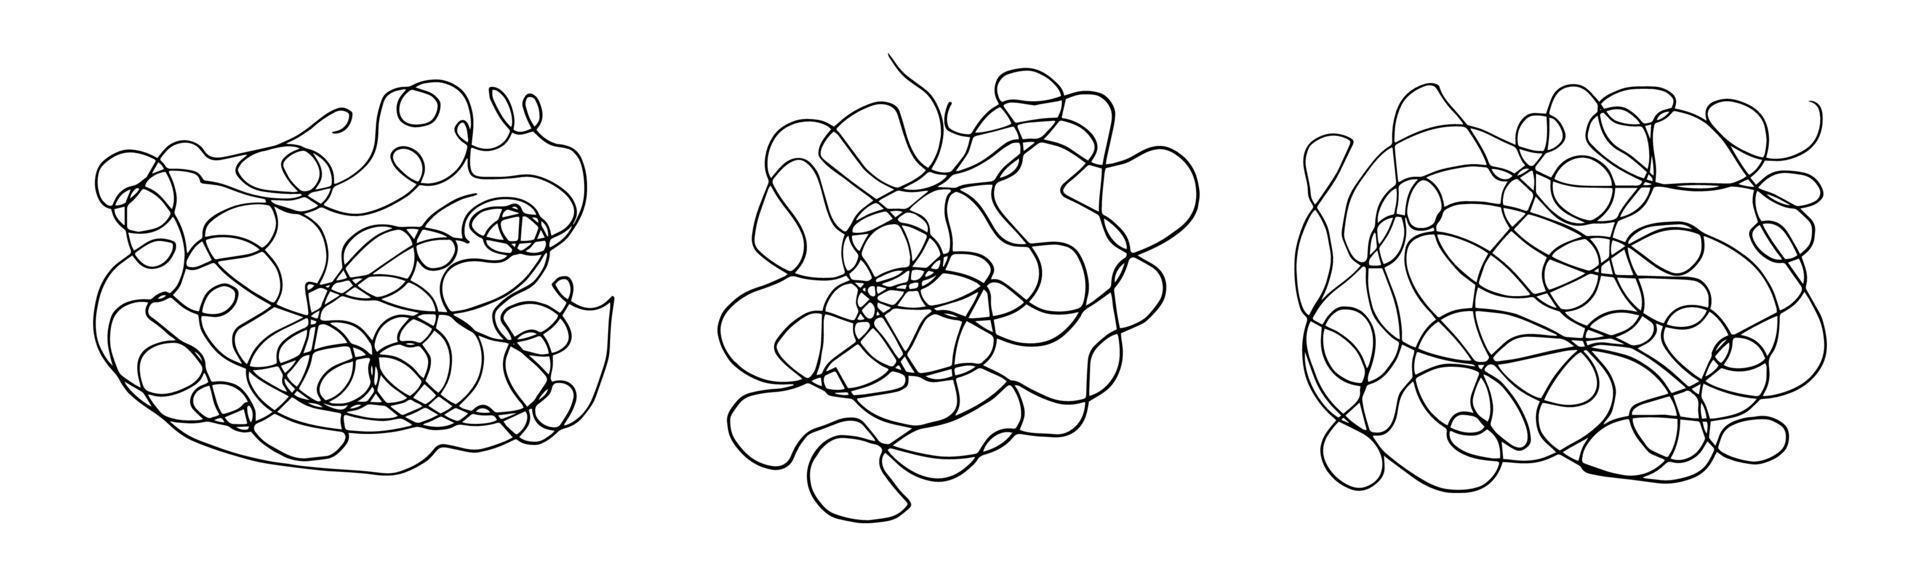 doodle dessiné à la main serti de gribouillis emmêlés abstraits. vecteur de lignes chaotiques aléatoires. collection de gribouillis.